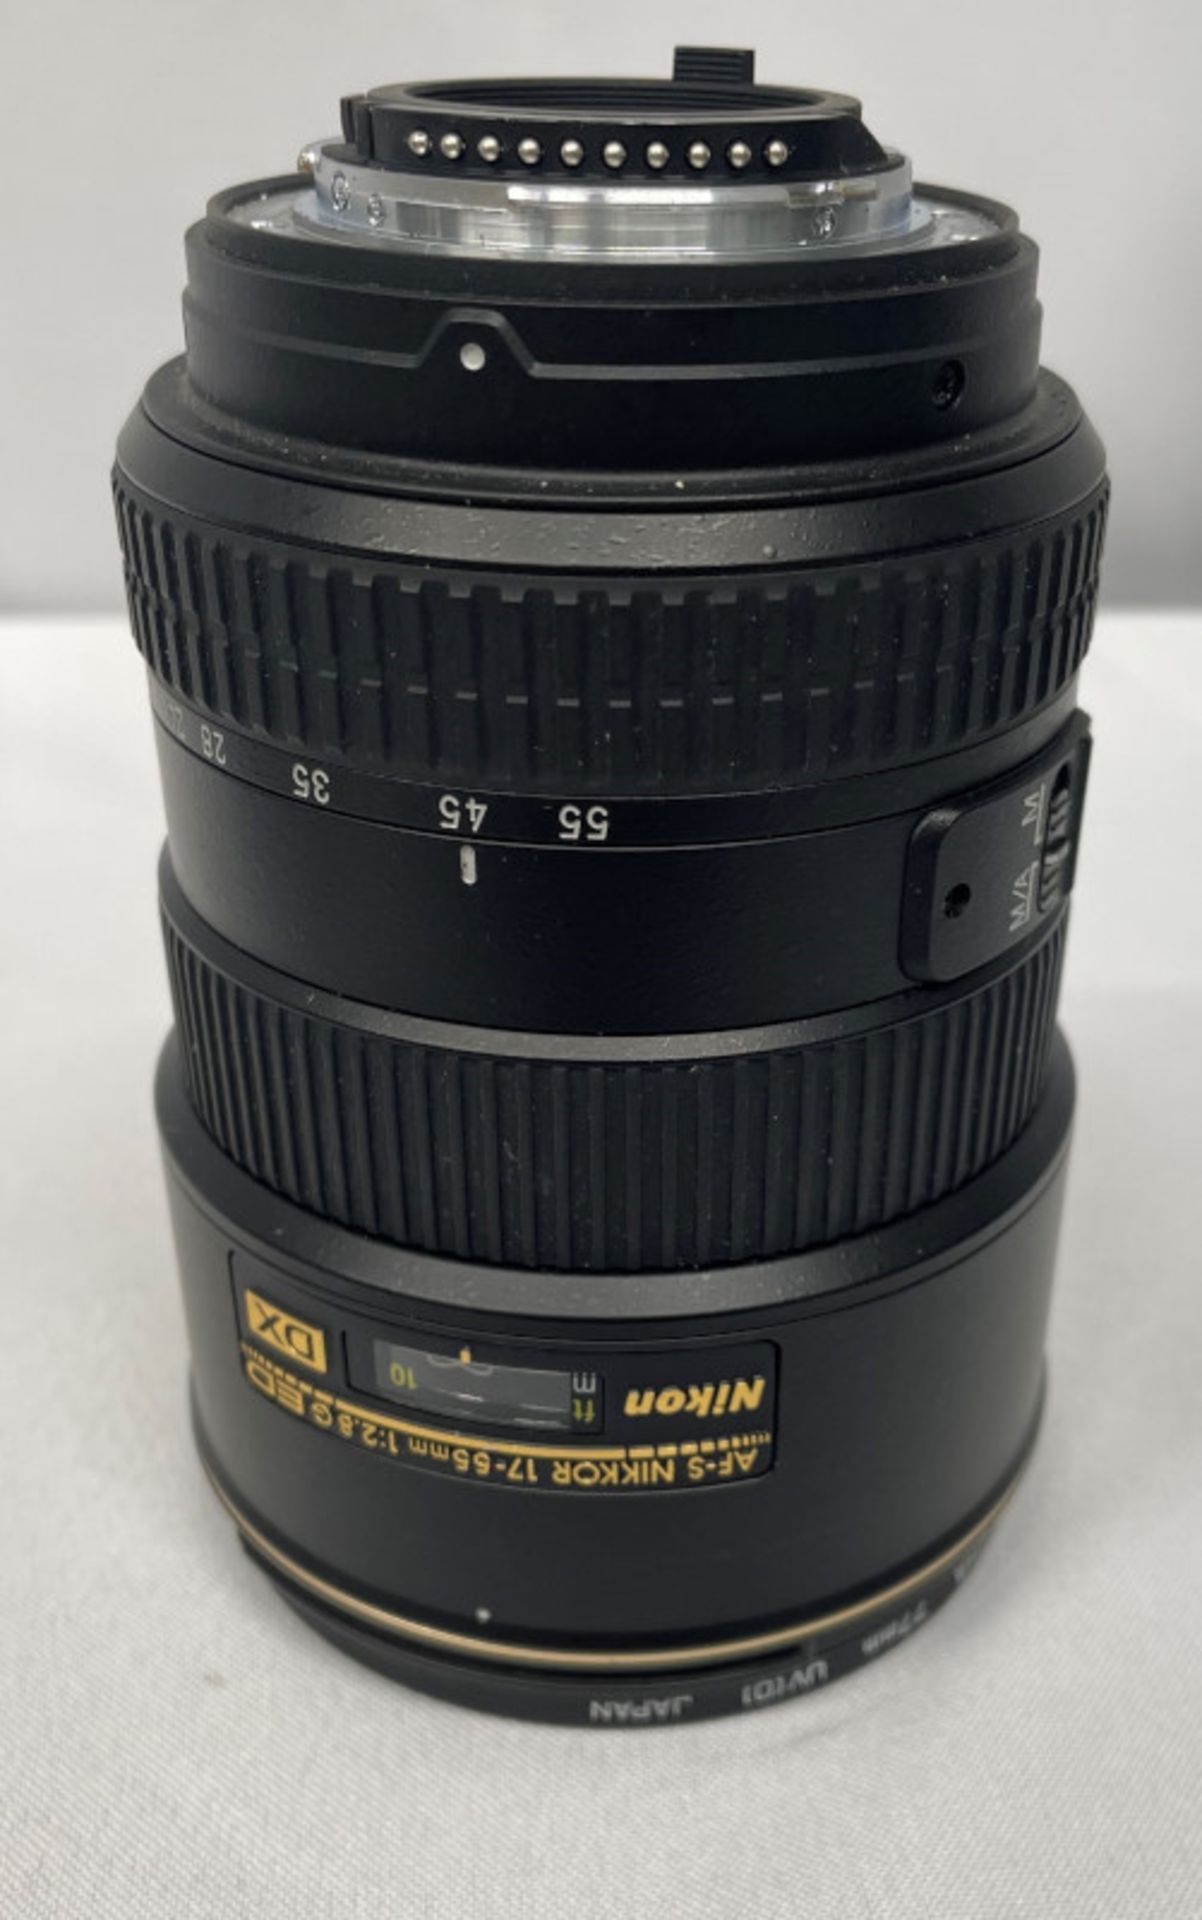 Nikon DX AF-S Nikkor 17-55mm - 1:2.8G ED Lens - Serial No. 332022 with HOYA 77mm UV(O) Filter - Image 2 of 8